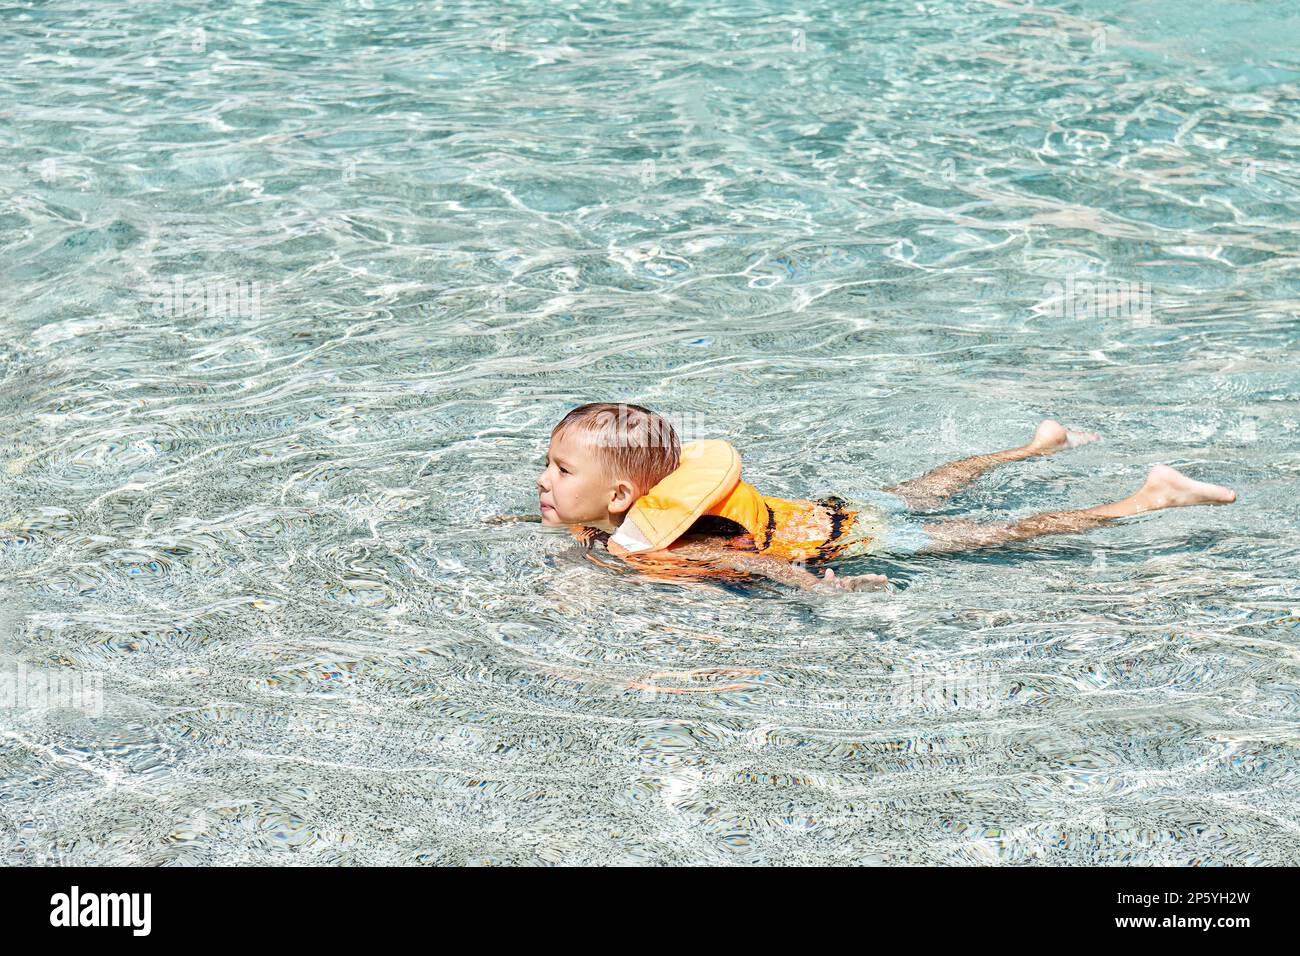 Décontracté, le gilet de sauvetage apprend à nager dans une piscine peu profonde avec de l'eau bleue claire. Garçon aime l'activité dans le parc aquatique pendant les vacances d'été Banque D'Images